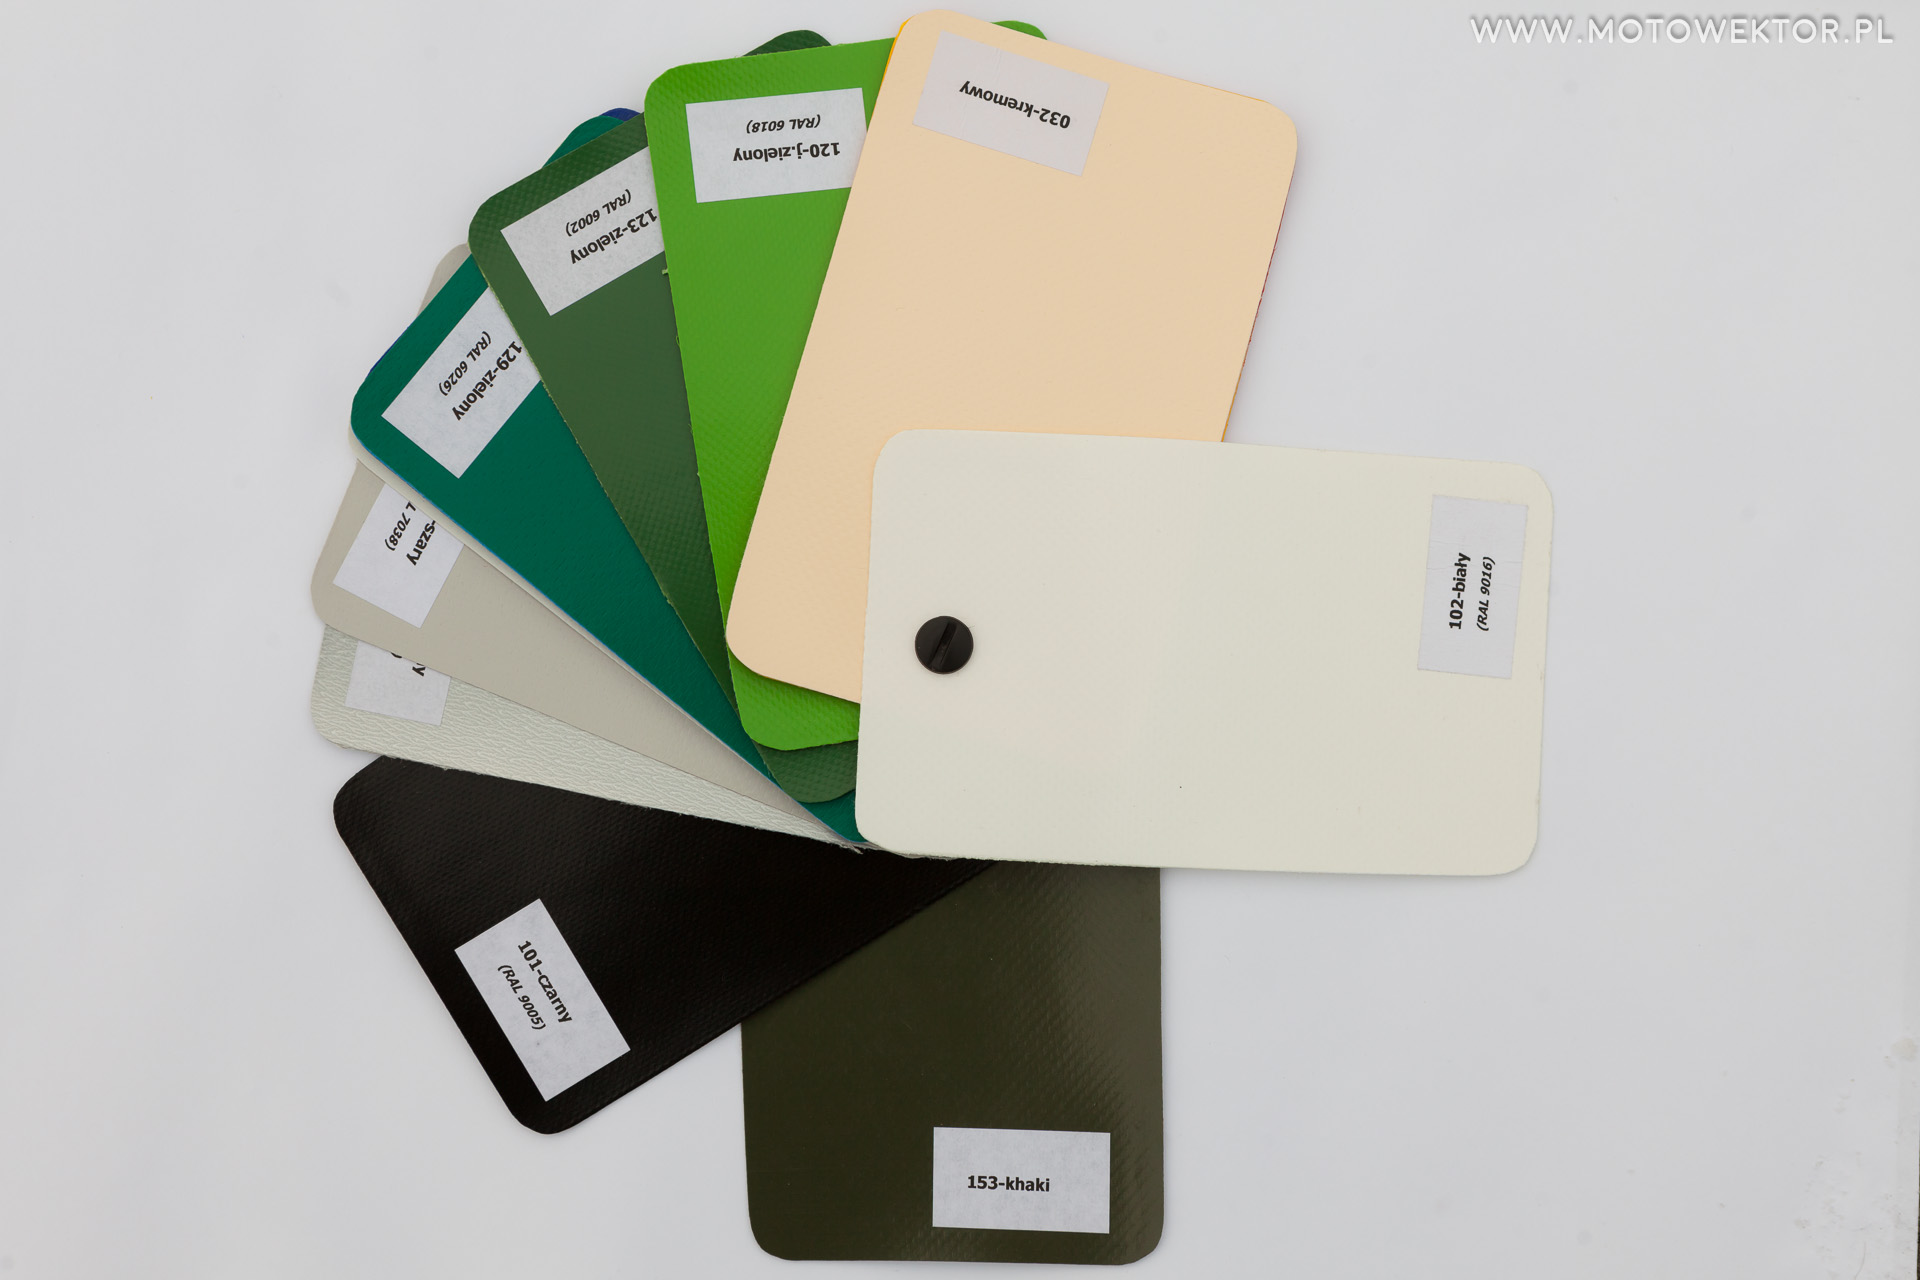 Kolory plandek - porównanie jasności koloru khaki i z czarną plandeką i barwy z zielonymi plandekami